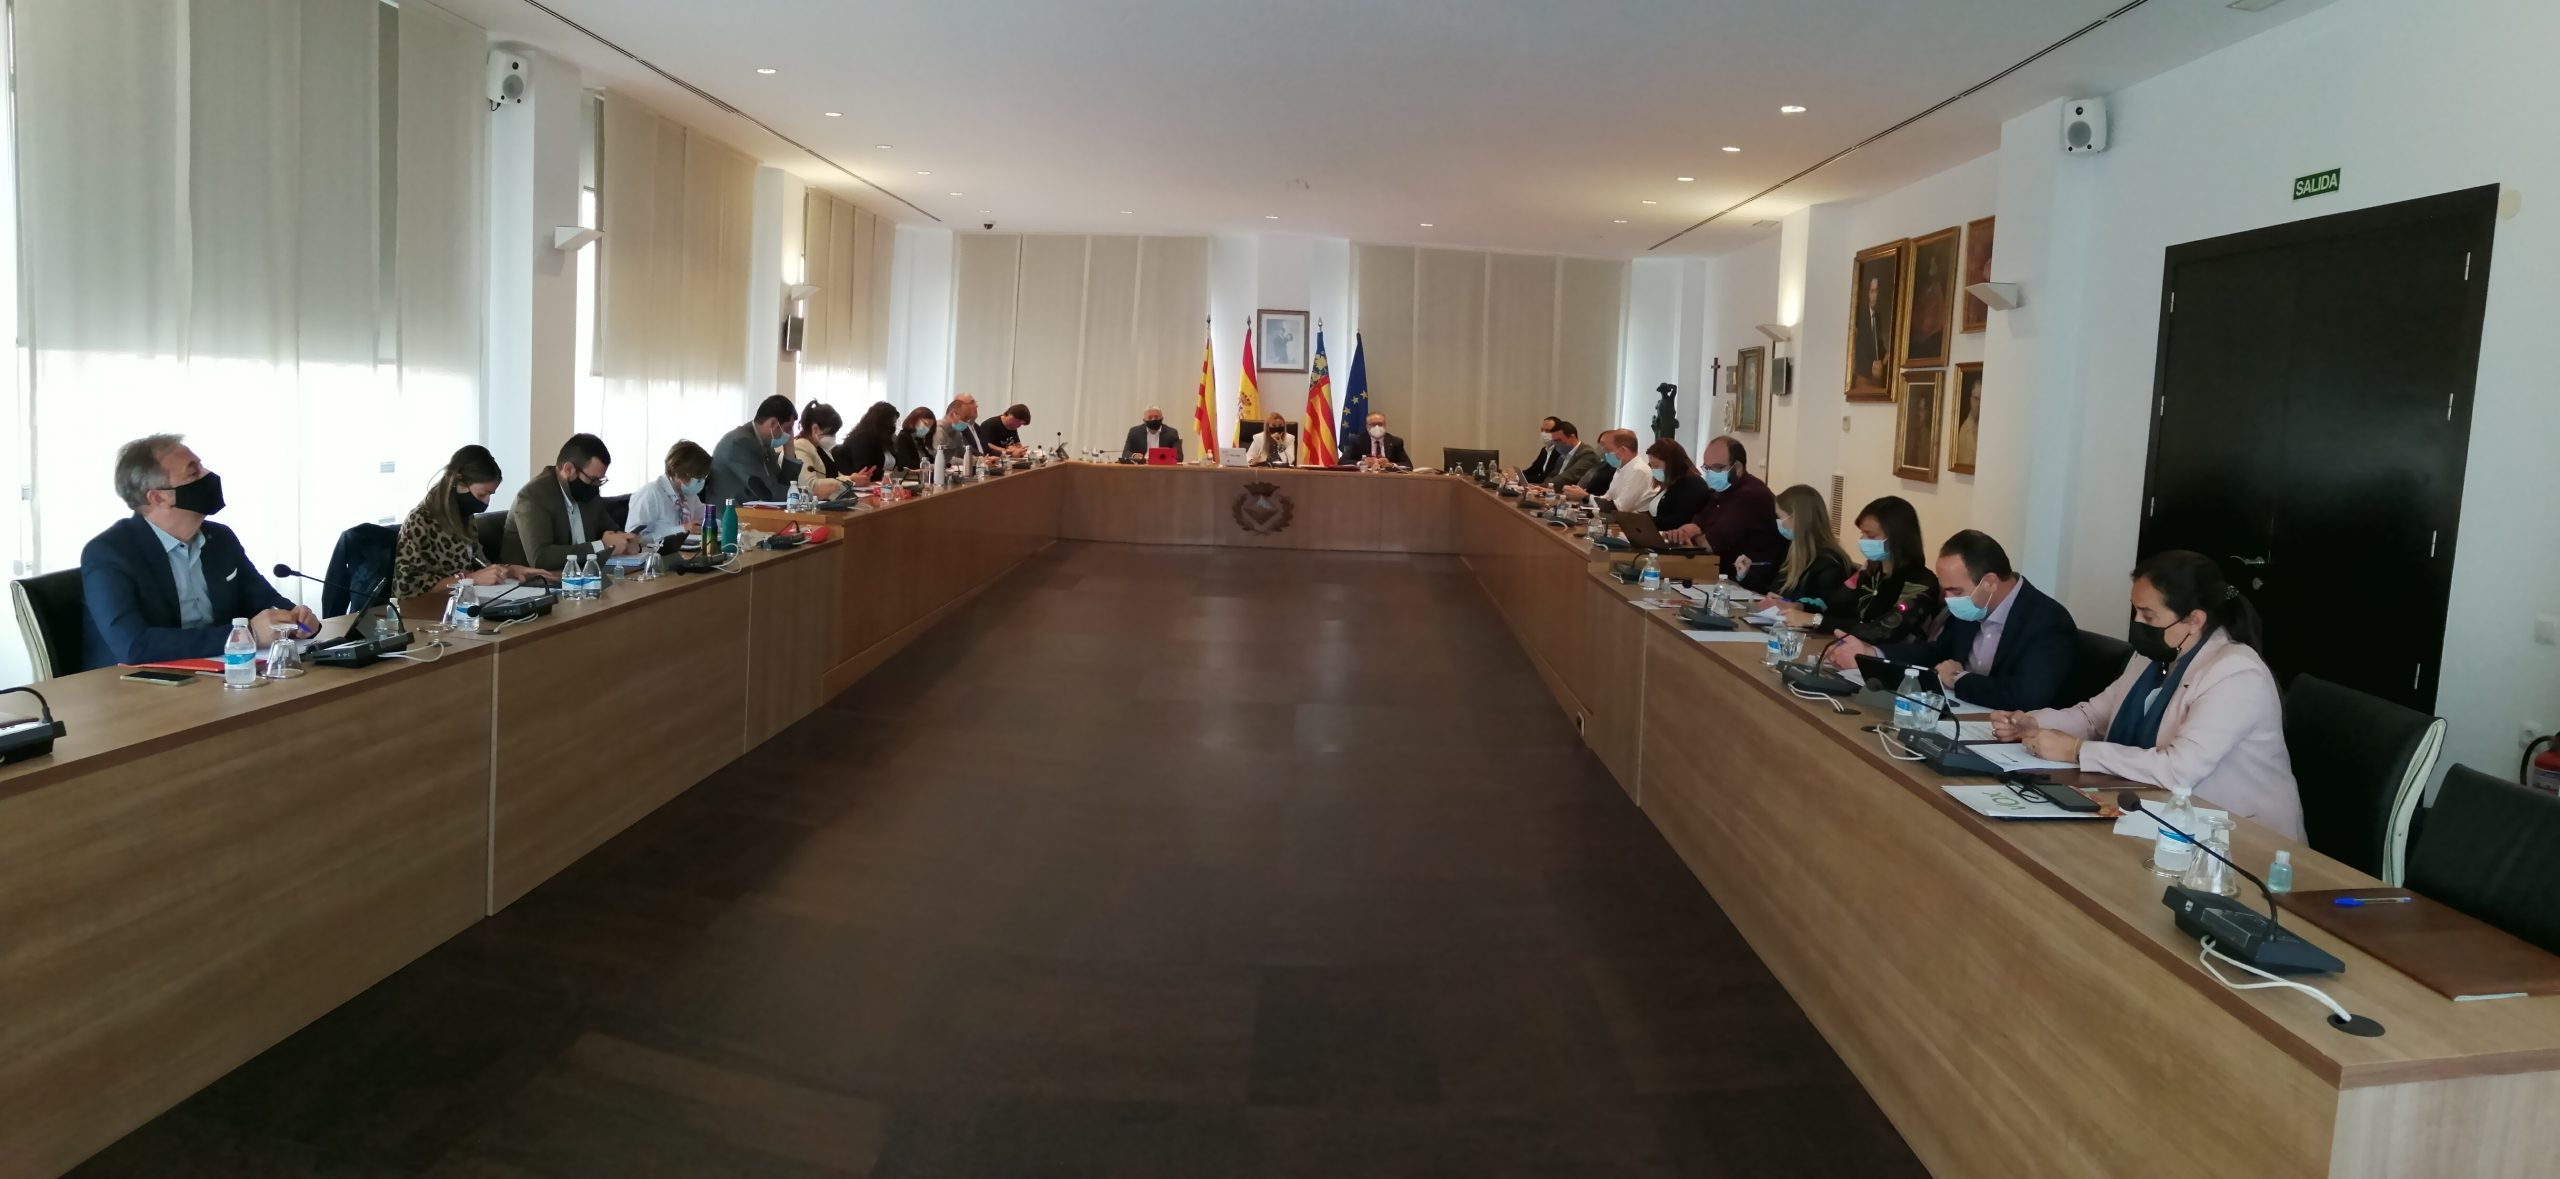 El Pleno de Vila-real avala por unanimidad la adquisición de suelo para el proyecto de supresión de la depuradora de Vora Riu